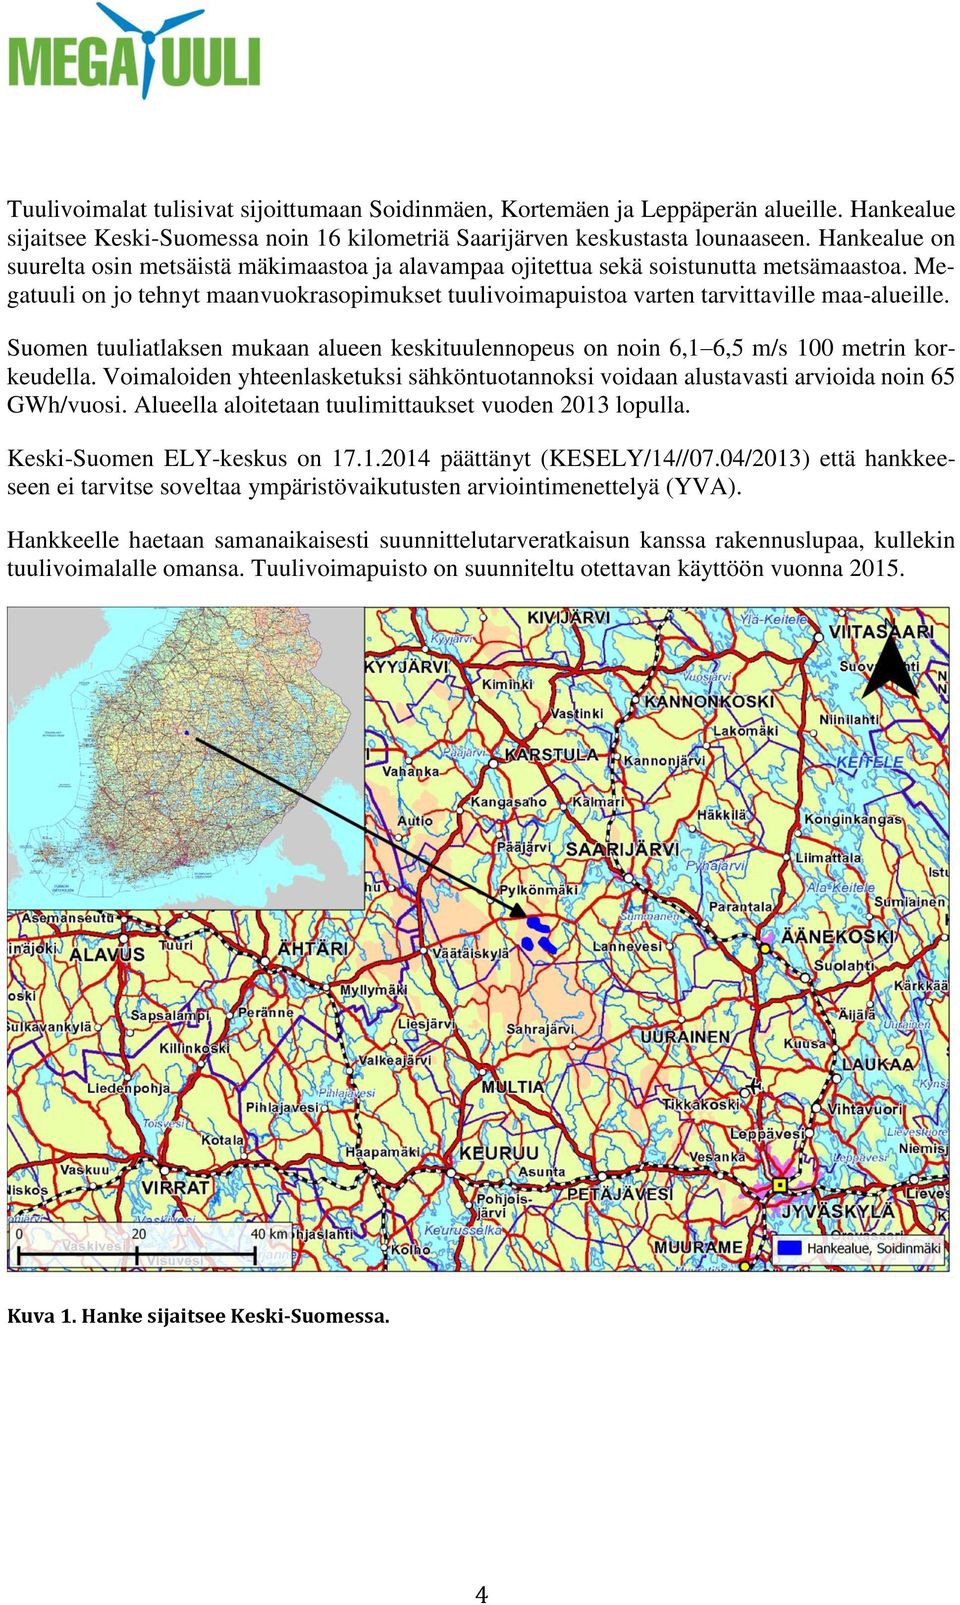 Suomen tuuliatlaksen mukaan alueen keskituulennopeus on noin 6,1 6,5 m/s 100 metrin korkeudella. Voimaloiden yhteenlasketuksi sähköntuotannoksi voidaan alustavasti arvioida noin 65 GWh/vuosi.